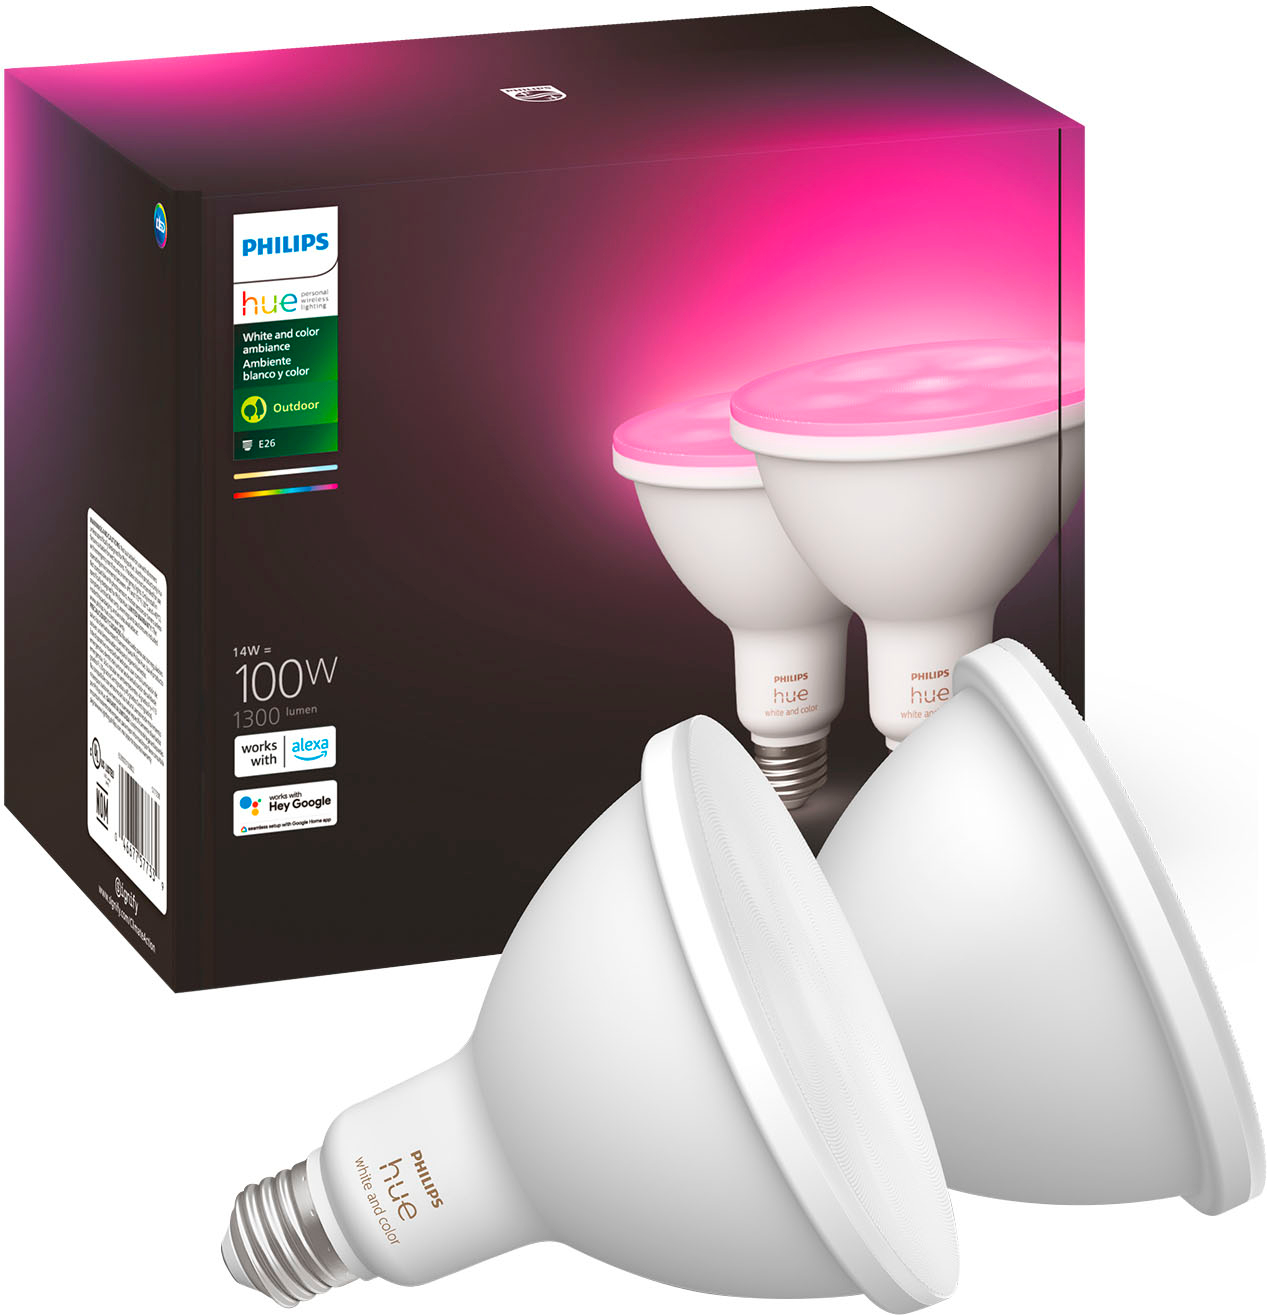 Philips Hue Smart LED 577338 - Best Buy